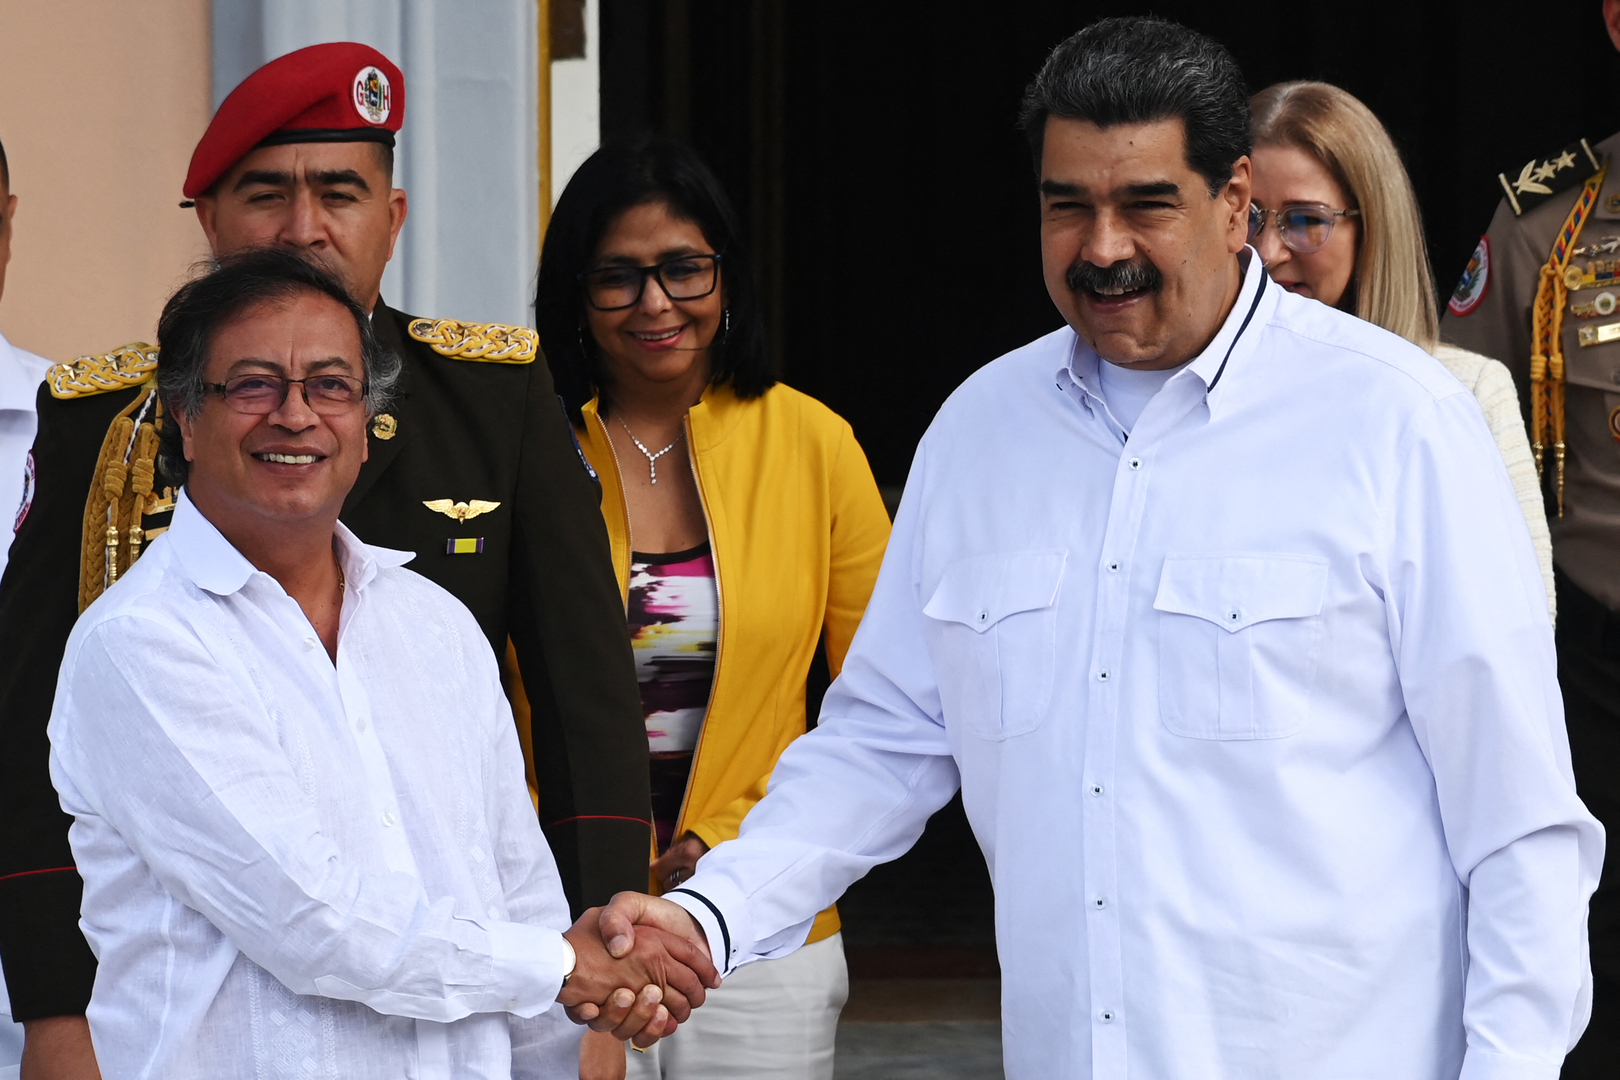 رئيس كولومبيا في زيارة غير معلنة لفنزويلا